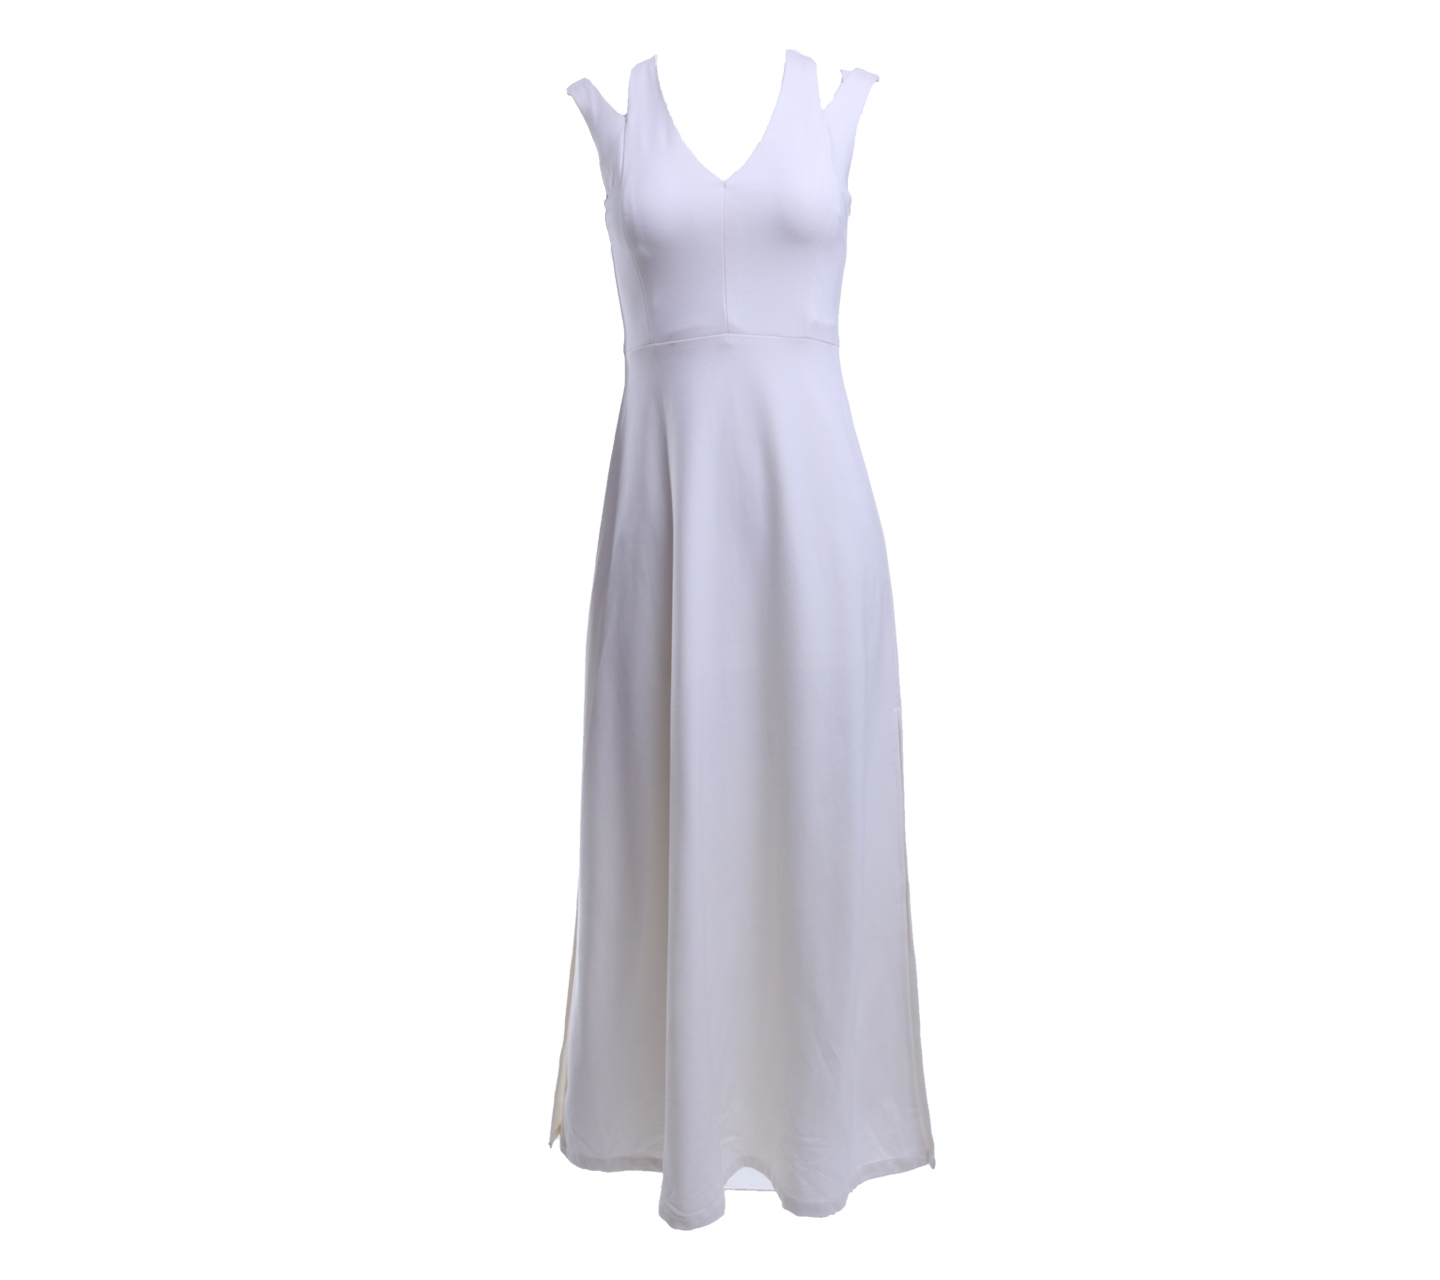 Klarra White Slit Long Dress